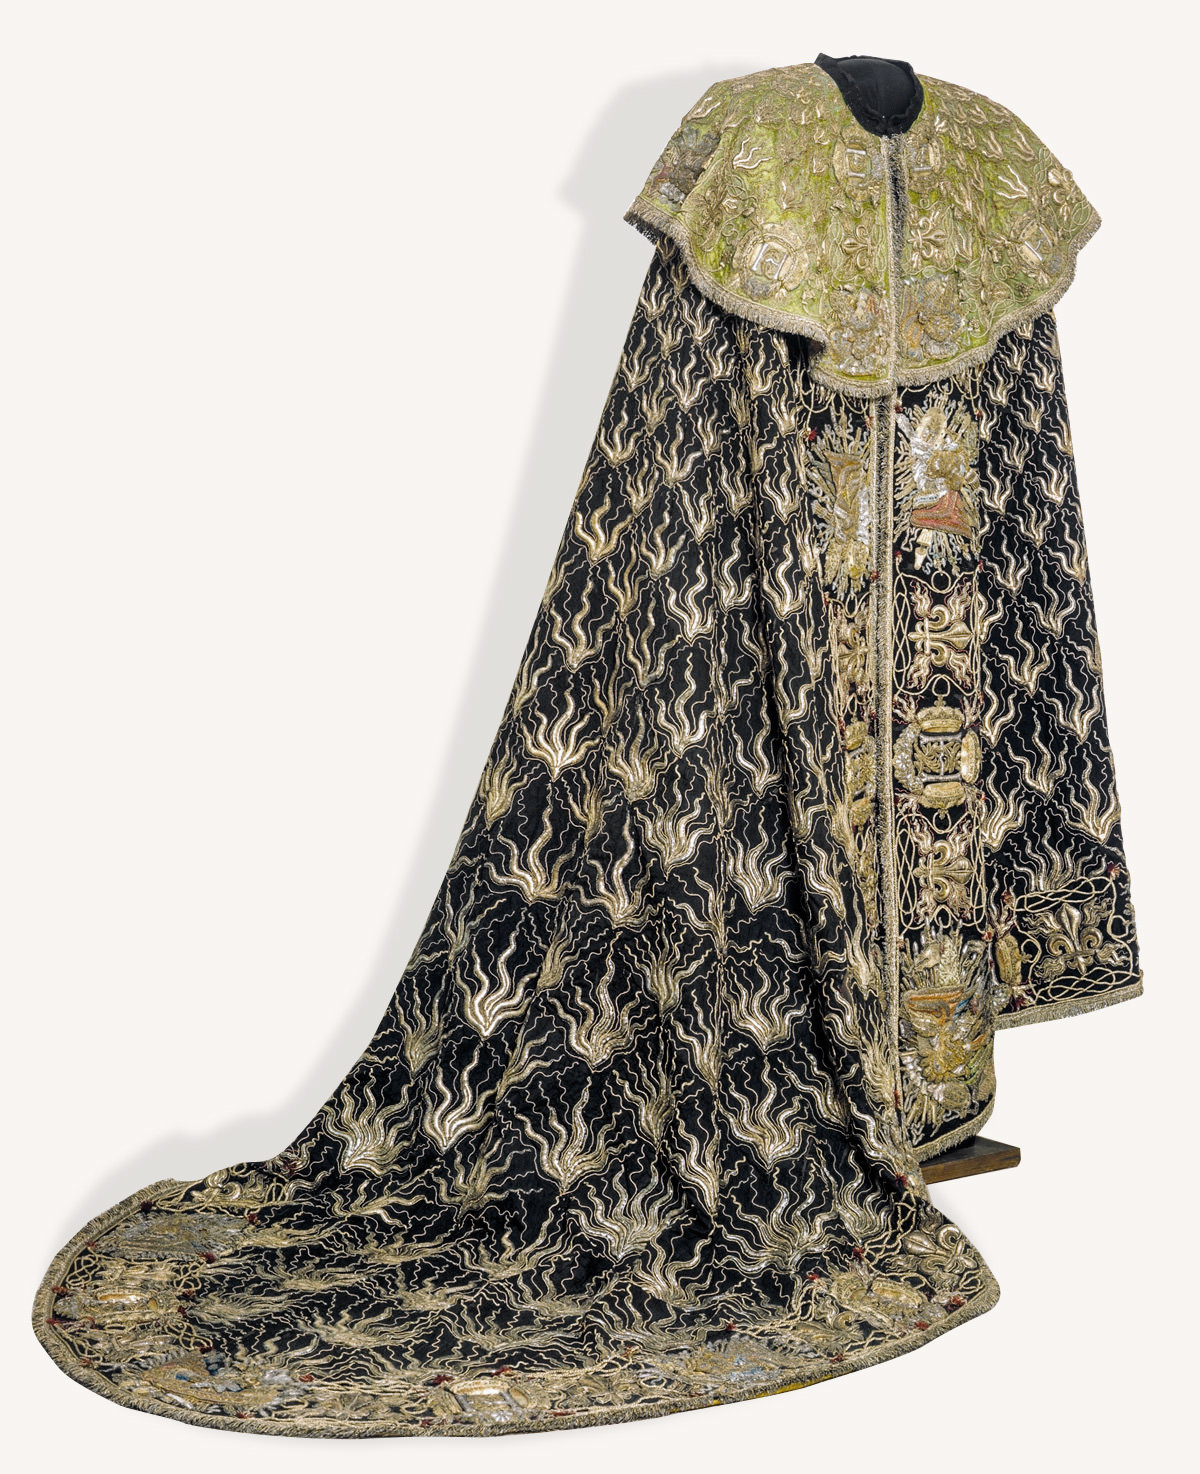 Płaszcz kawalera Orderu Świętego Ducha, Jan III Sobieski, Skarbiec Koronny, Wawel, Zamek Królewski na Wawelu, niezła sztuka